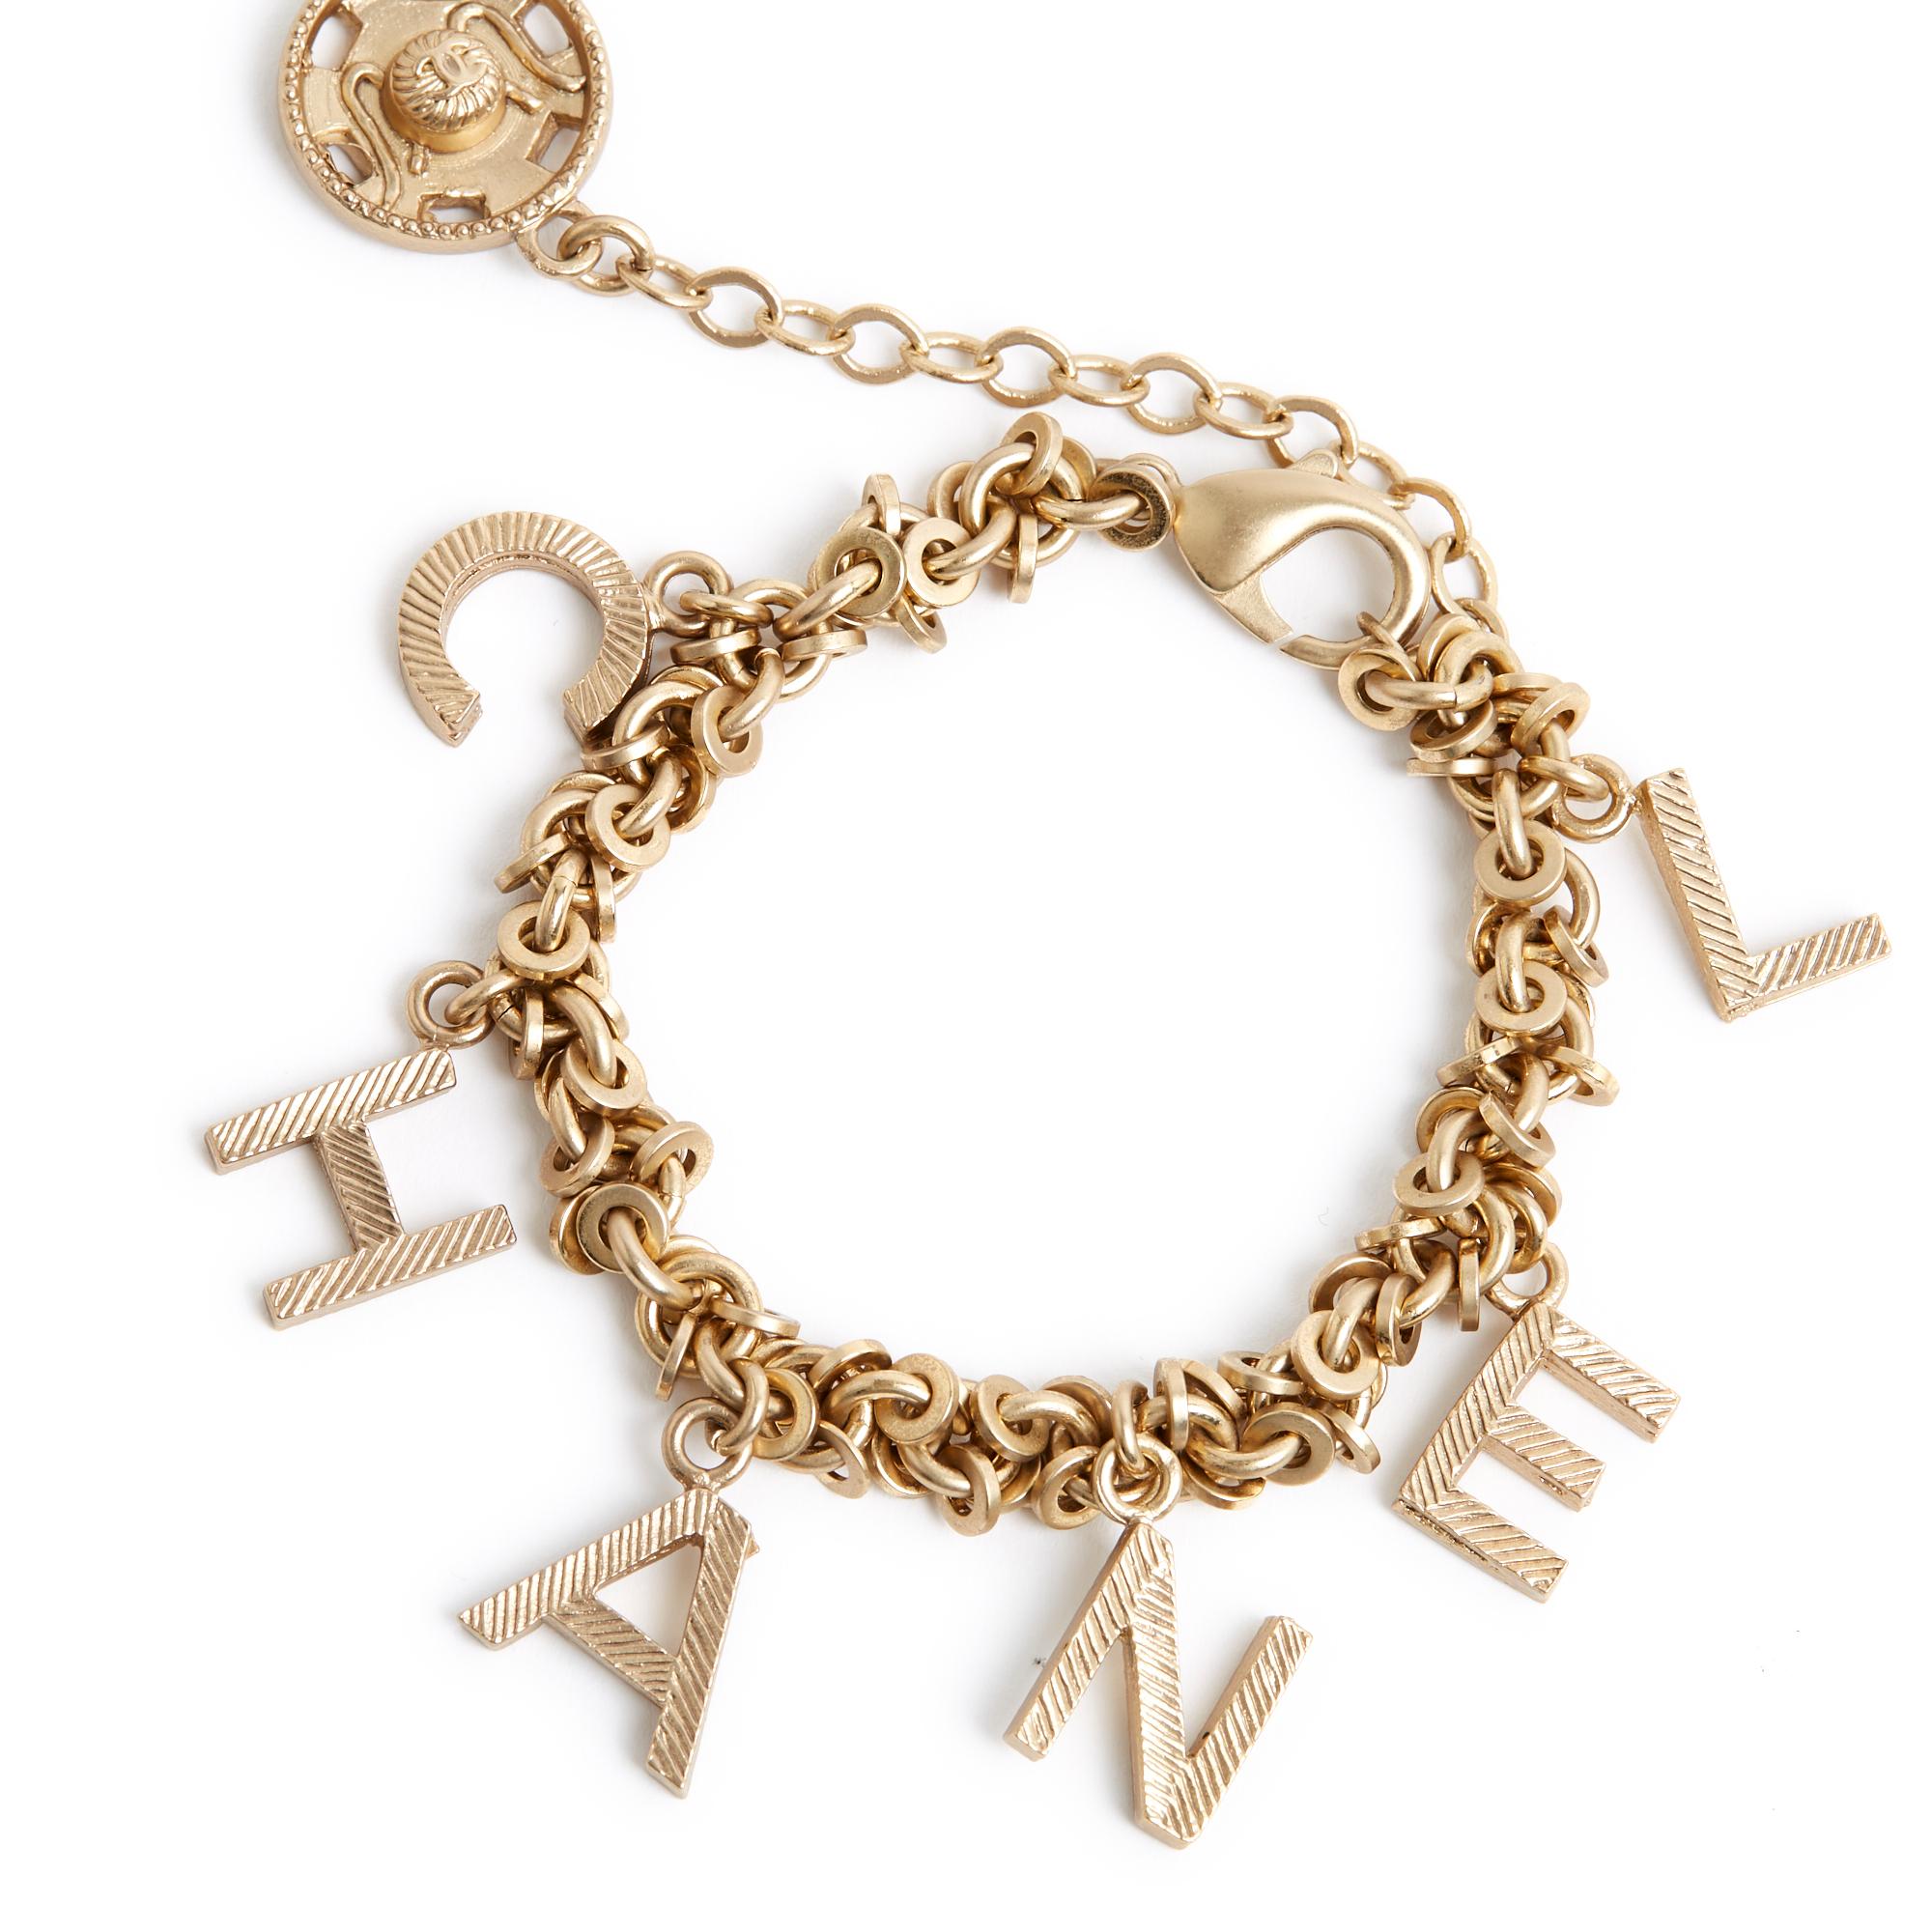 Armband Chanel Collection FW2003 aus mattgoldenem Metall, bestehend aus einer Kette mit runden Gliedern und Quasten mit Chanel-Schriftzug, Verschluss mit Karabinerhaken an einer Kette, die mit einem Nähverschluss mit CC-Logo endet. Länge des